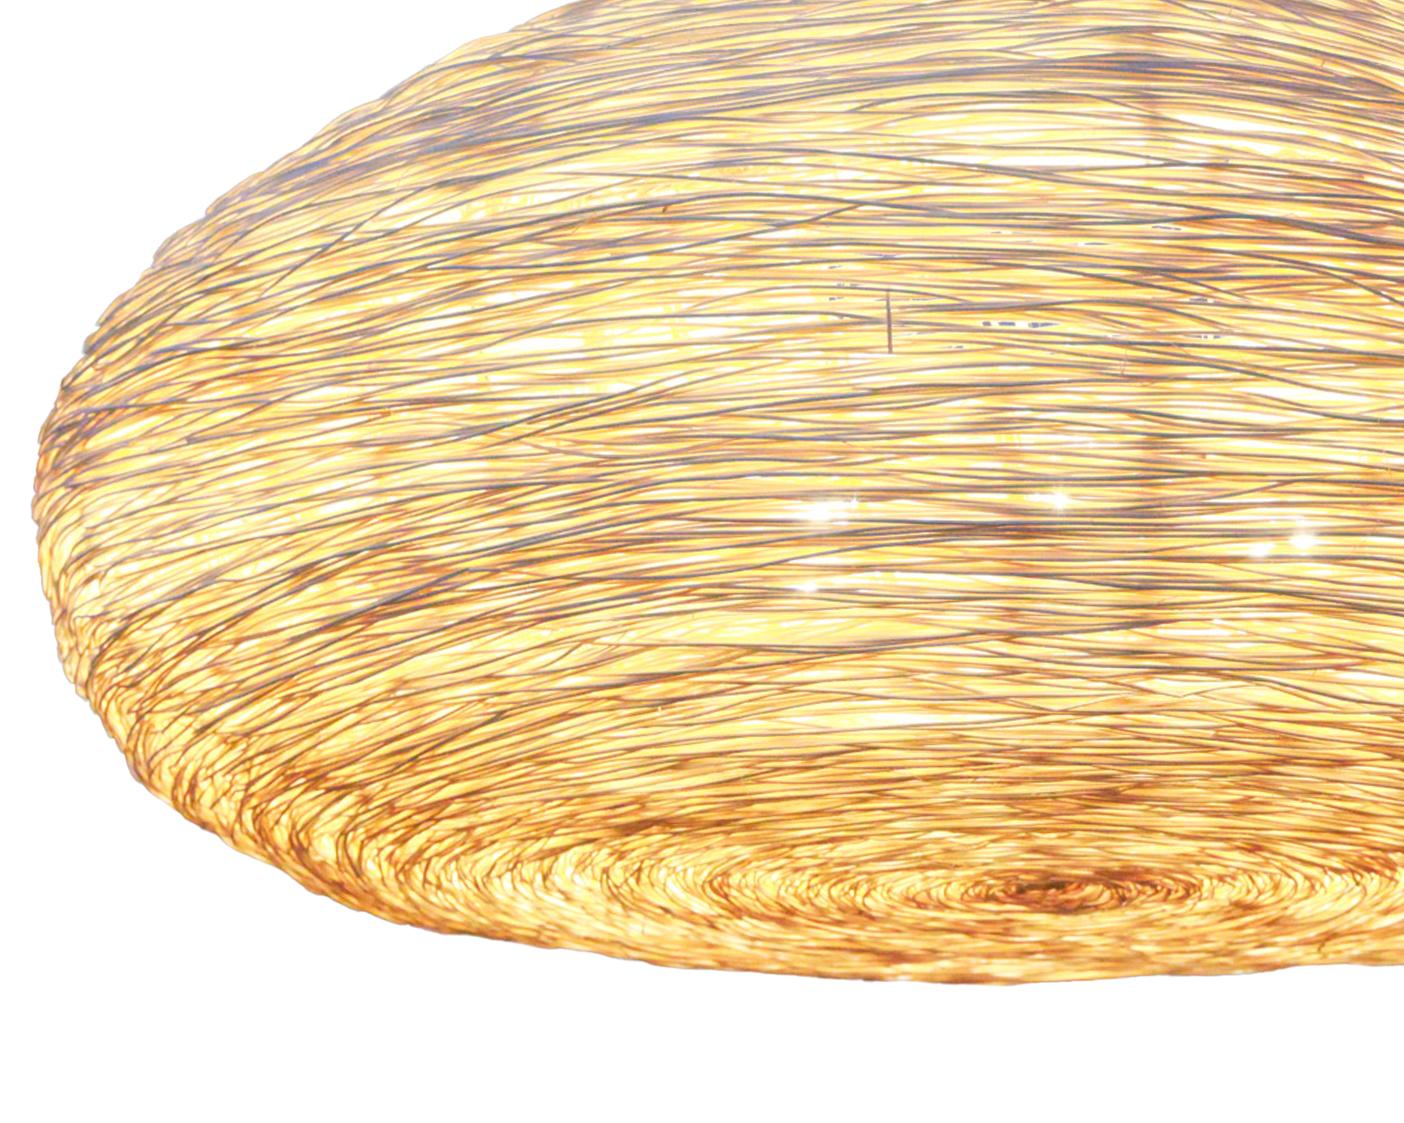 Der Diffusor der New World Pendelleuchte hat eine runde/ovale Form, die mit feinstem, extrudiertem Rattan ummantelt ist, das bei der Installation eine warme und großzügige Lichtqualität erzeugt. Ango verwendet unsere eigene, einzigartige Technik des